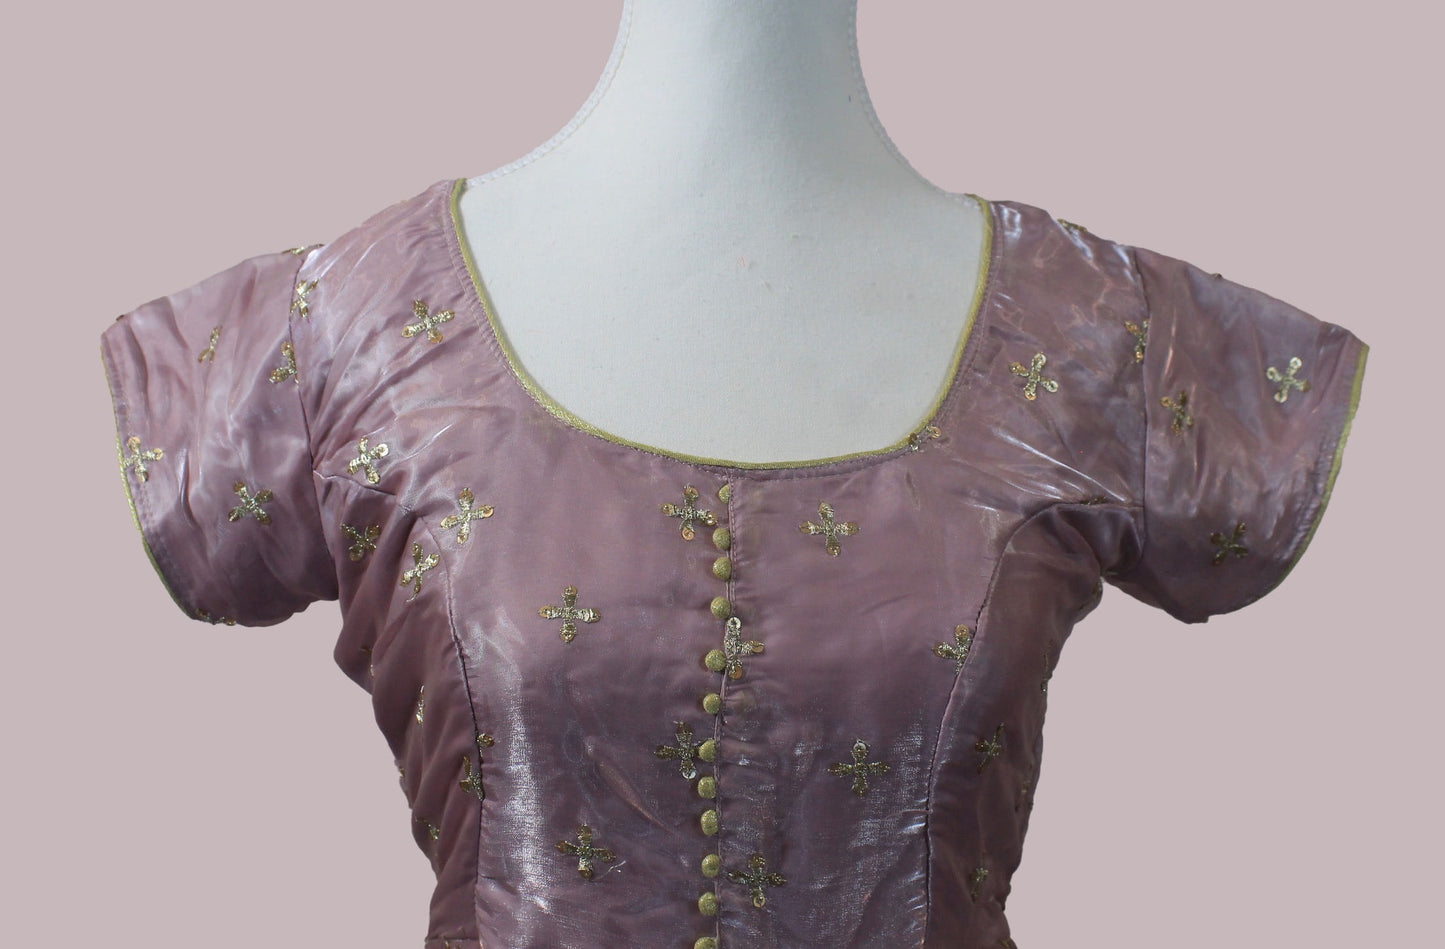 Enchanting Anarkali - Lavender Color Organza Dress with Gold Work